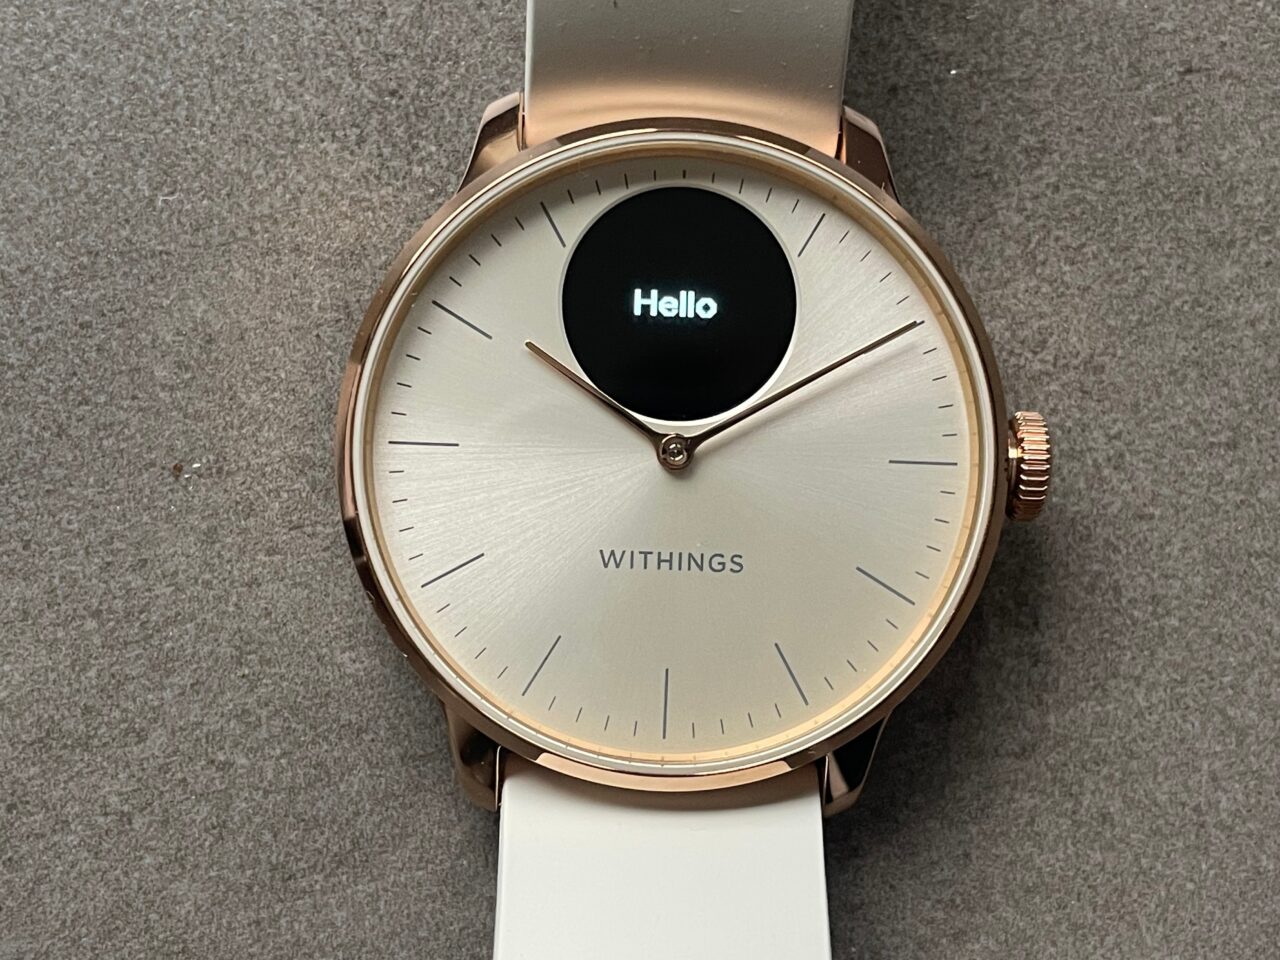 Zegarek Withings z różowozłotą kopertą i białym paskiem, cyferblat z napisem "Hello".